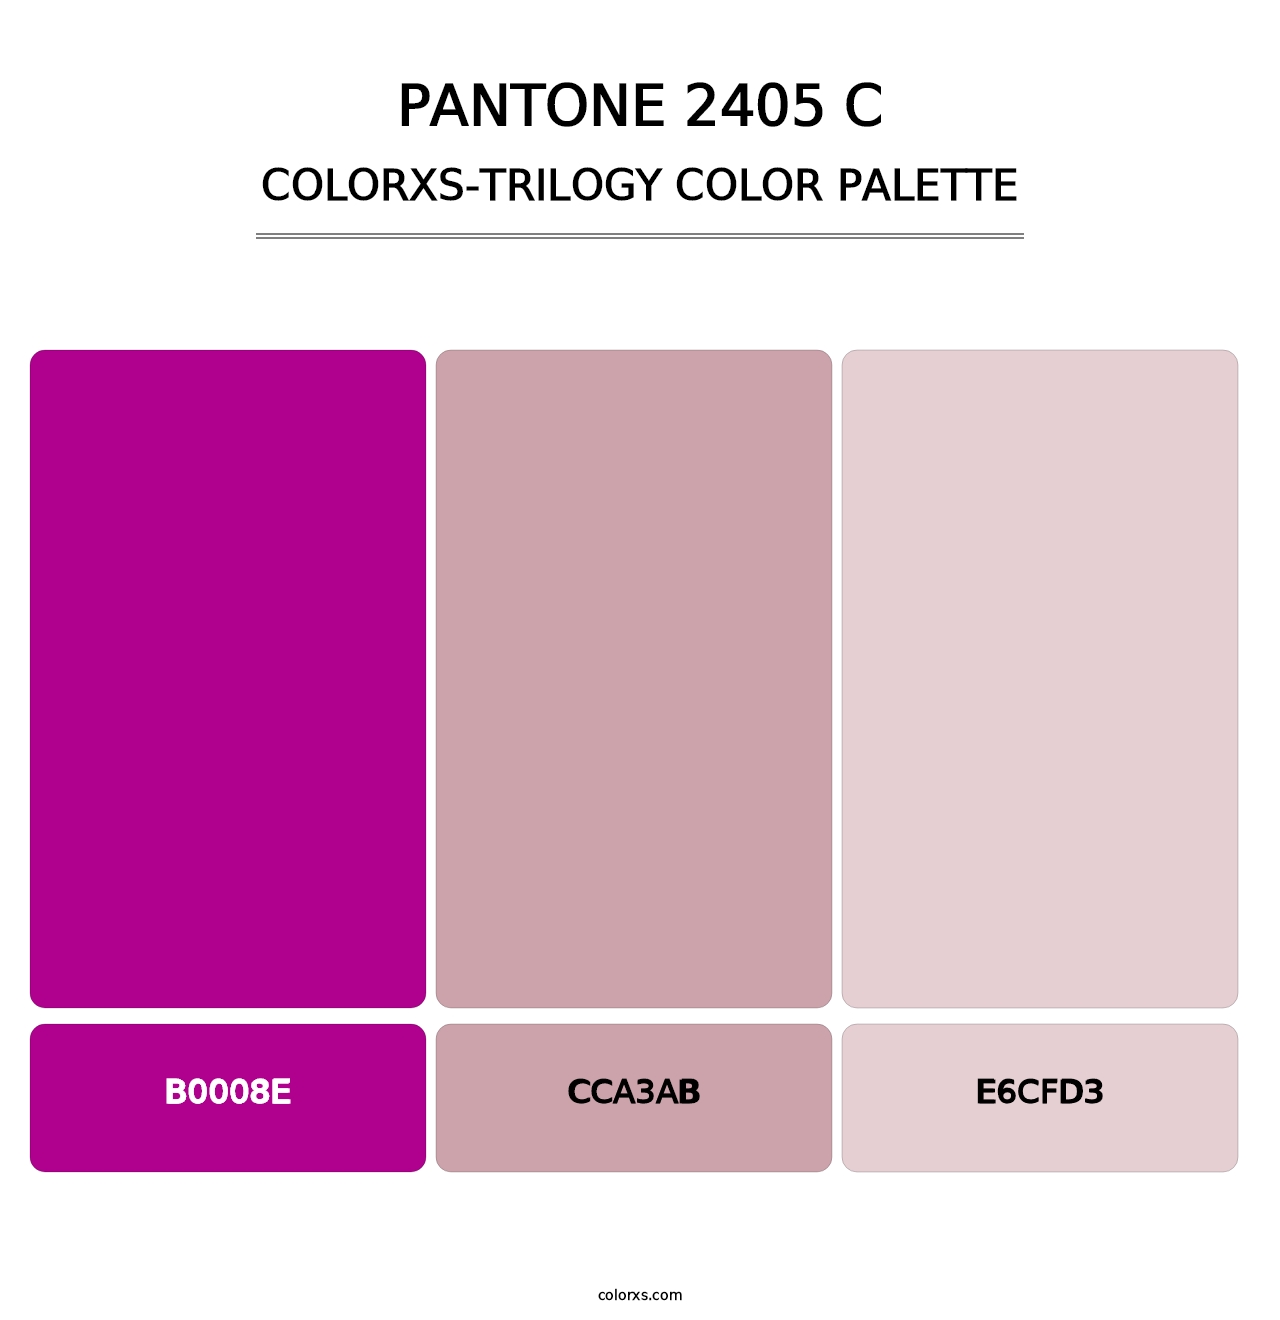 PANTONE 2405 C - Colorxs Trilogy Palette